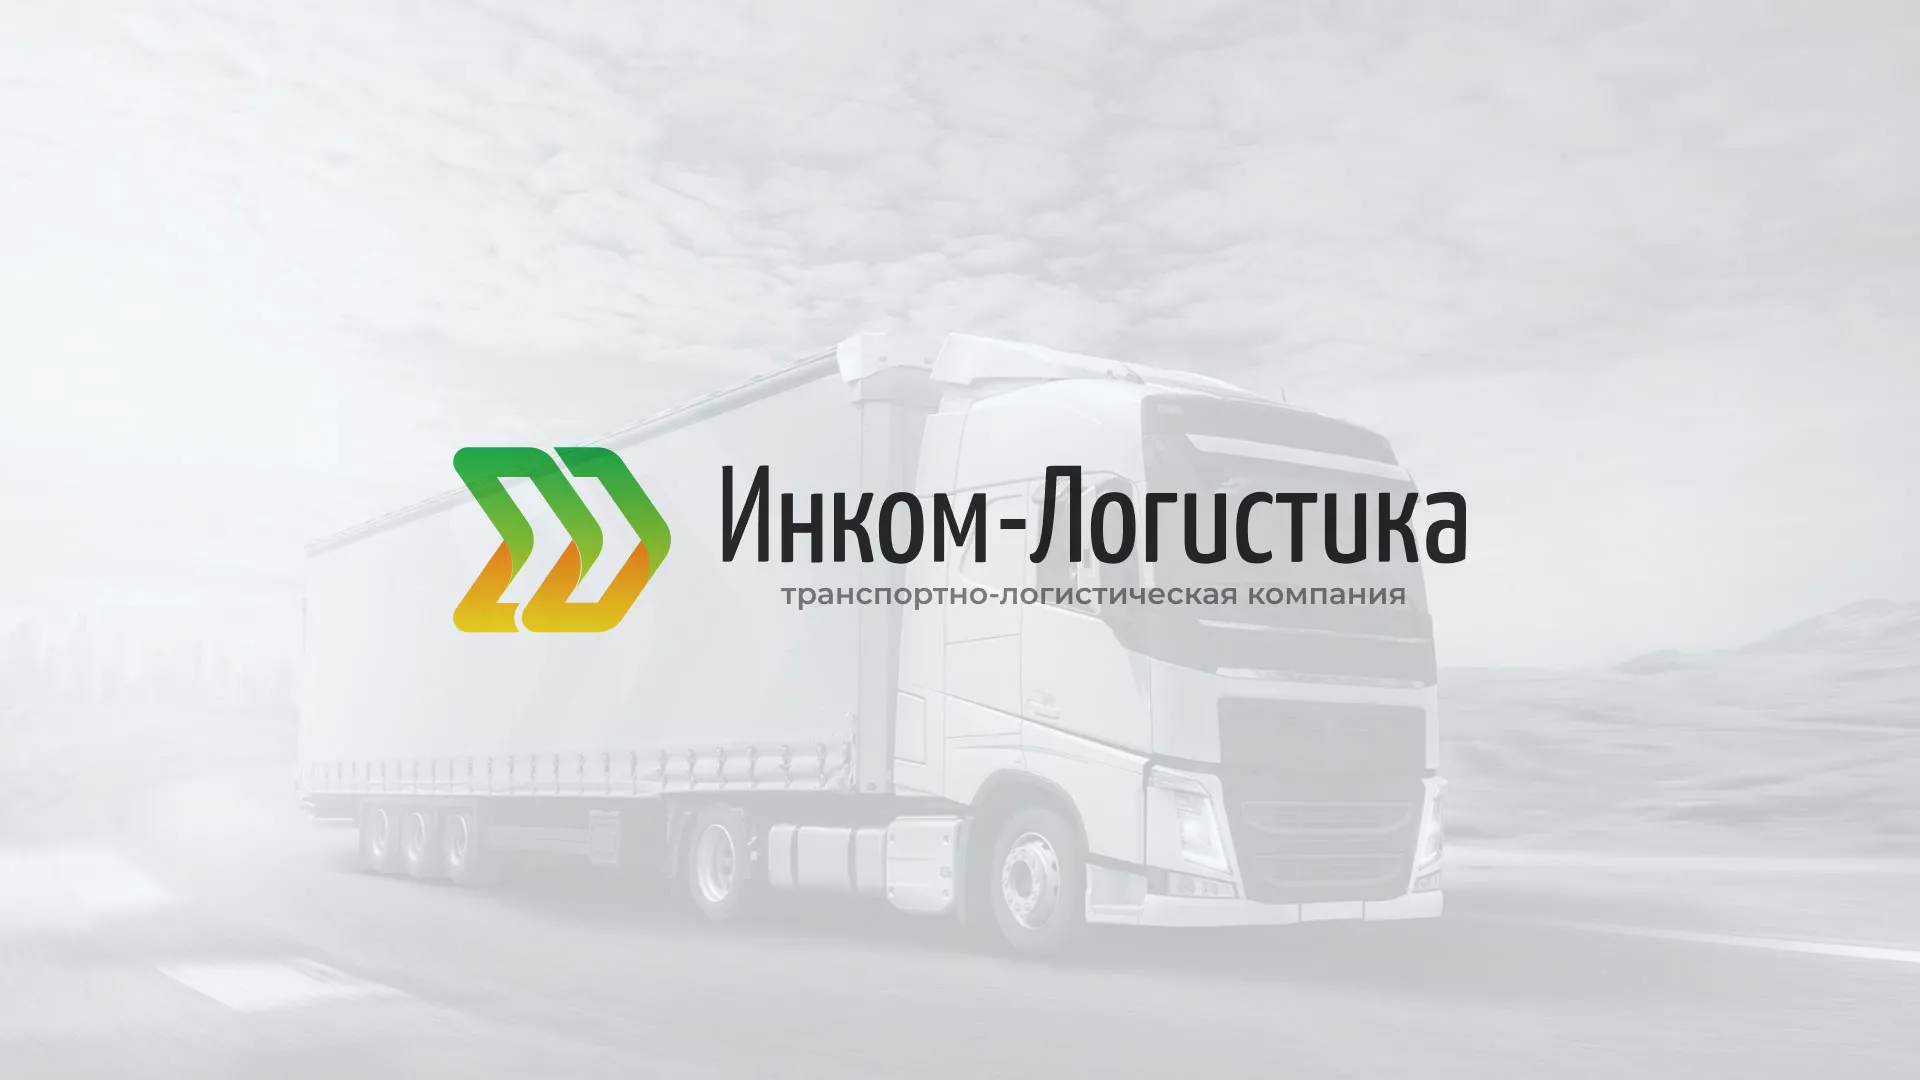 Разработка логотипа и сайта компании «Инком-Логистика» в Москве